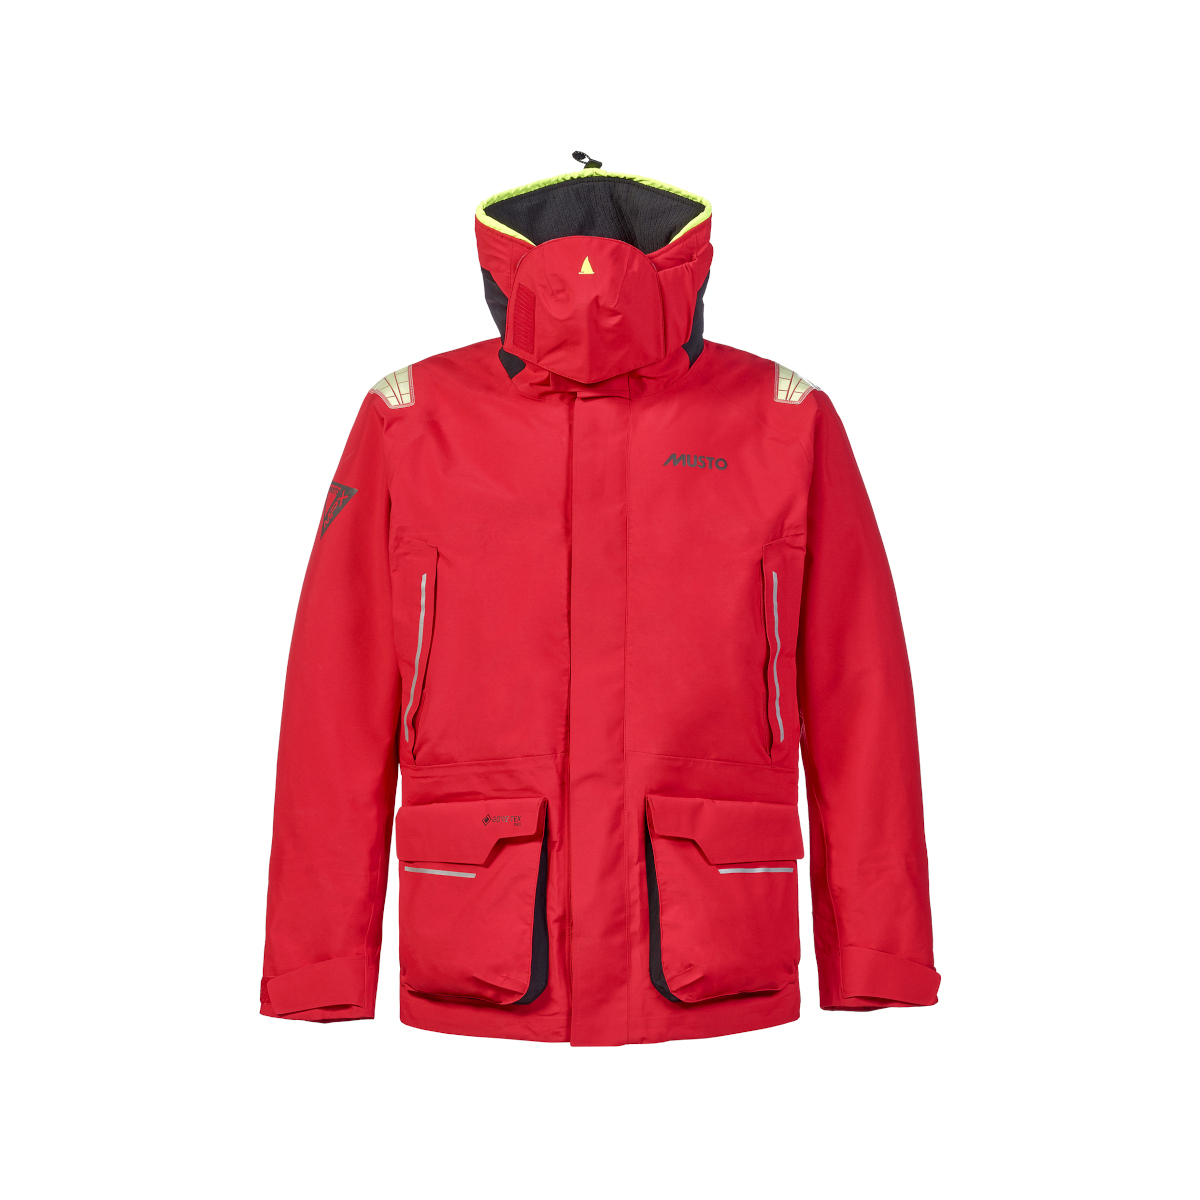 Musto MPX Gore-Tex Pro Offshore 2.0 veste de voile homme rouge, taille S